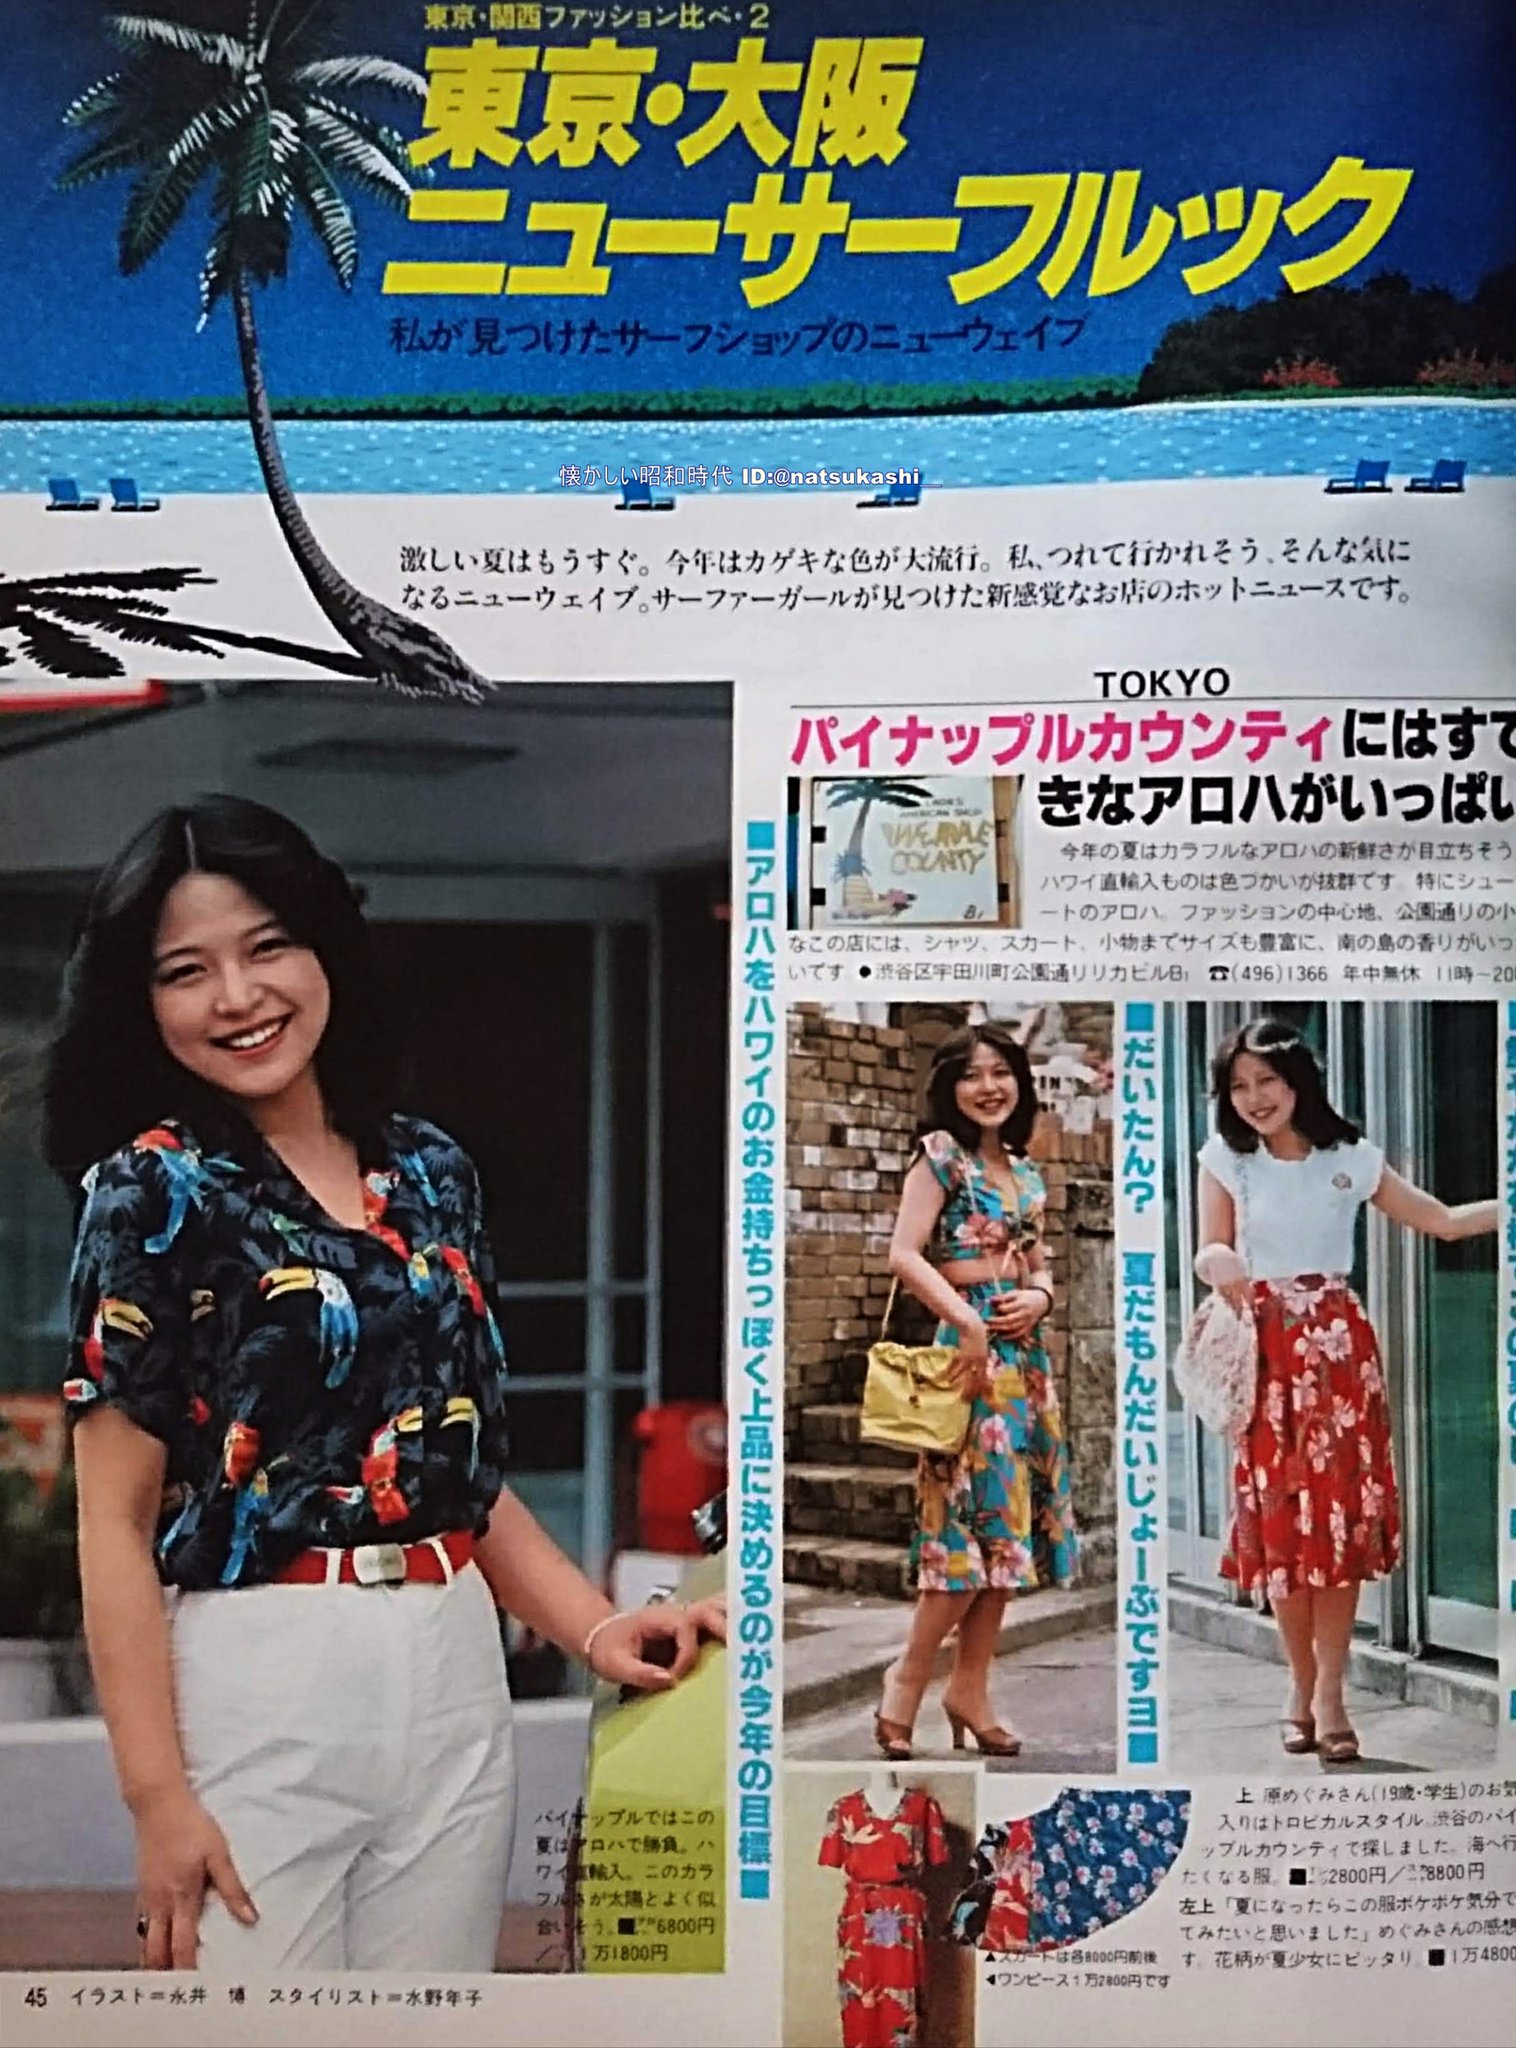 懐かしい昭和時代 東京大阪ニューサーフルック 若い女性 1980年 昭和55年 6月号 カラーパンツ アロハシャツみんなカラフル 横じまをボーダーとは言わず ストライプと言っていた お姉さんたちのサーファーカットが素敵